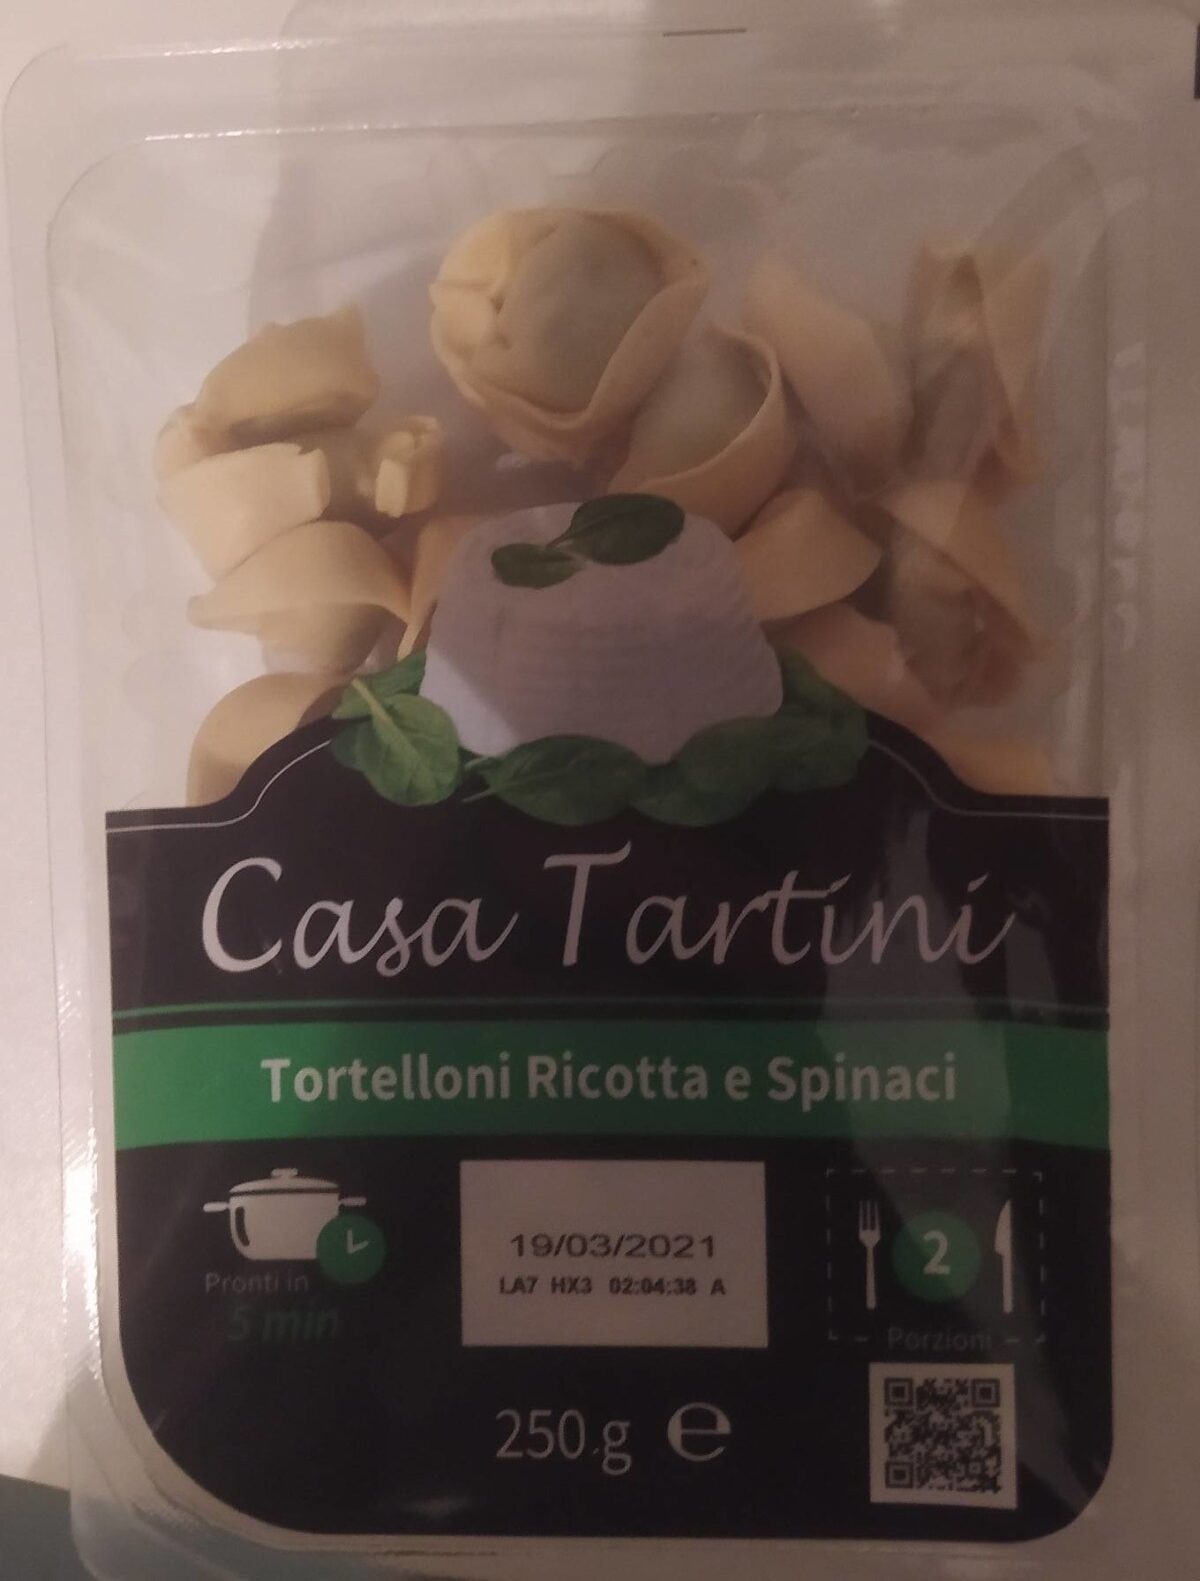 Tortelloni ricotta e spinaci - Prodotto